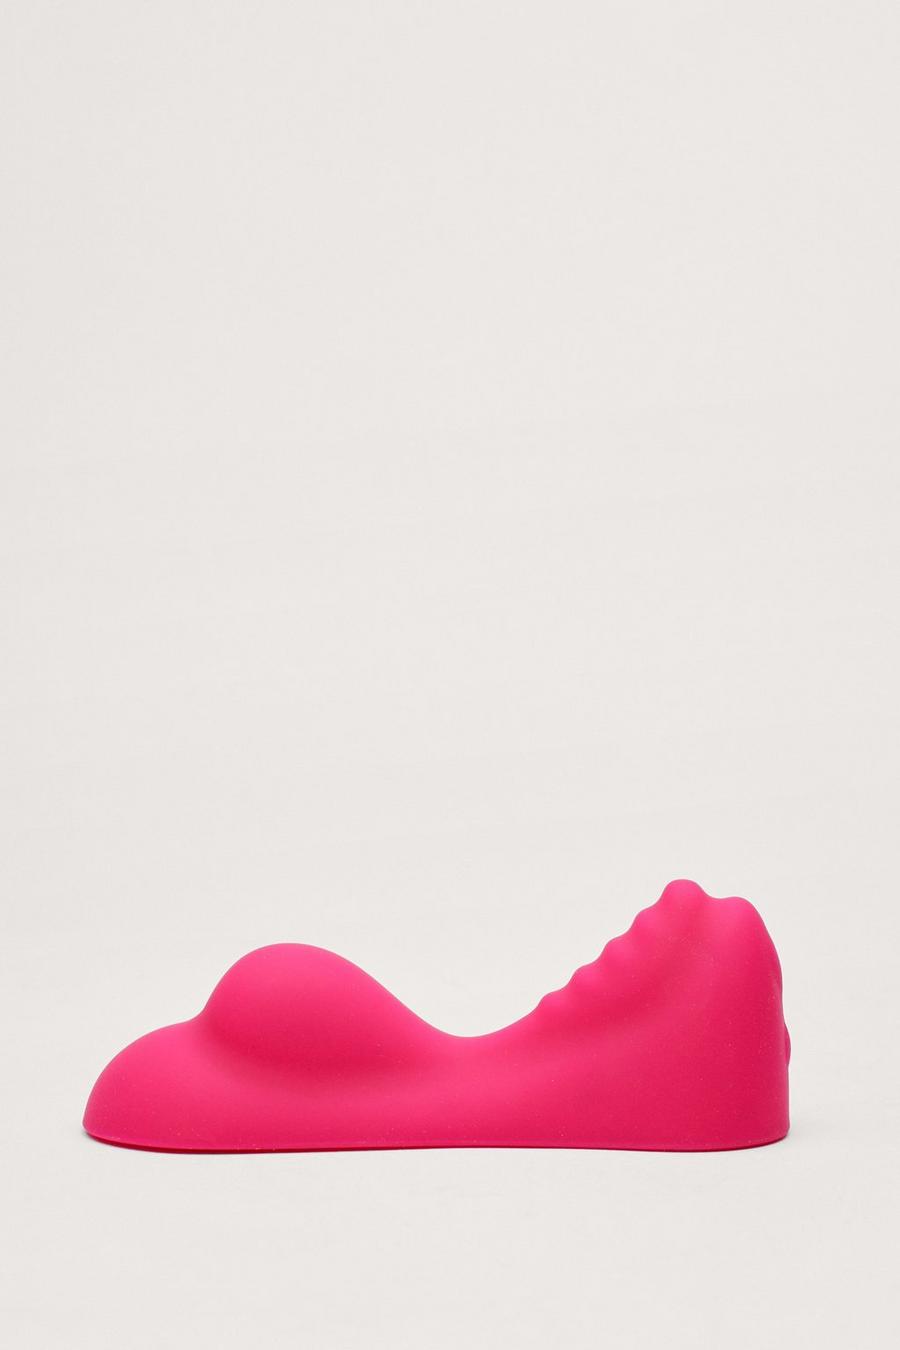 Pink Ridged Seat Vibrator Sex Toy